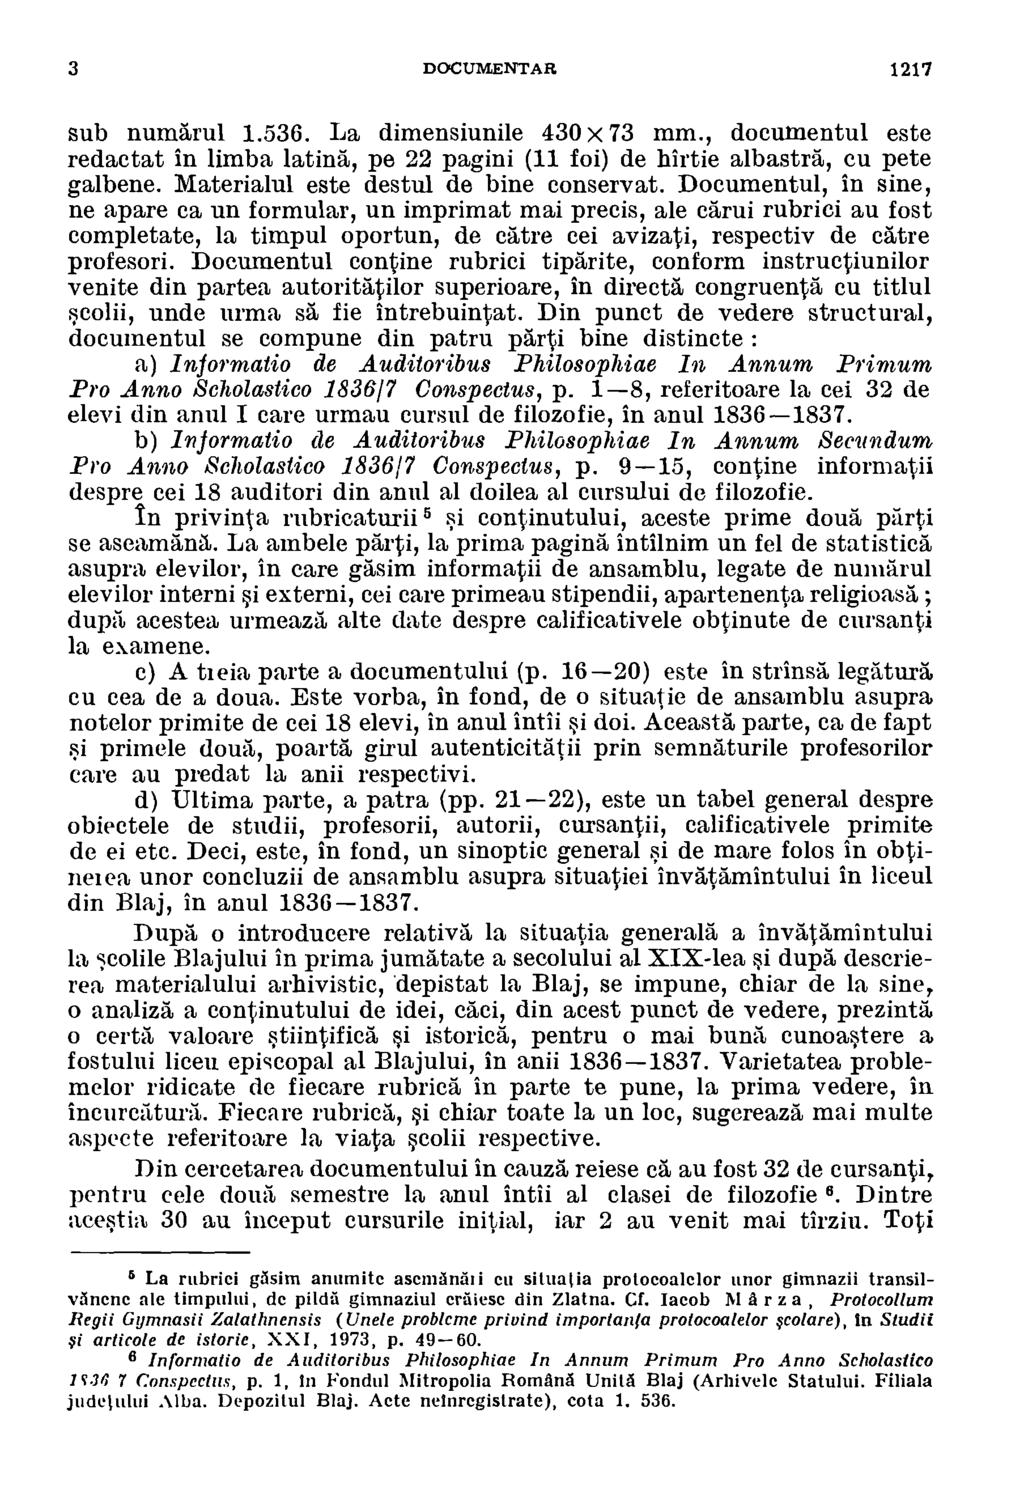 3 DOCUMENTAR 1217 sub numarul 1.536. La dimensiunile 430 x 73 mm., documentul este redactat in limba latin, pe 22 pagini (11 foi) de hirtie albastrd, cu pete galbene.